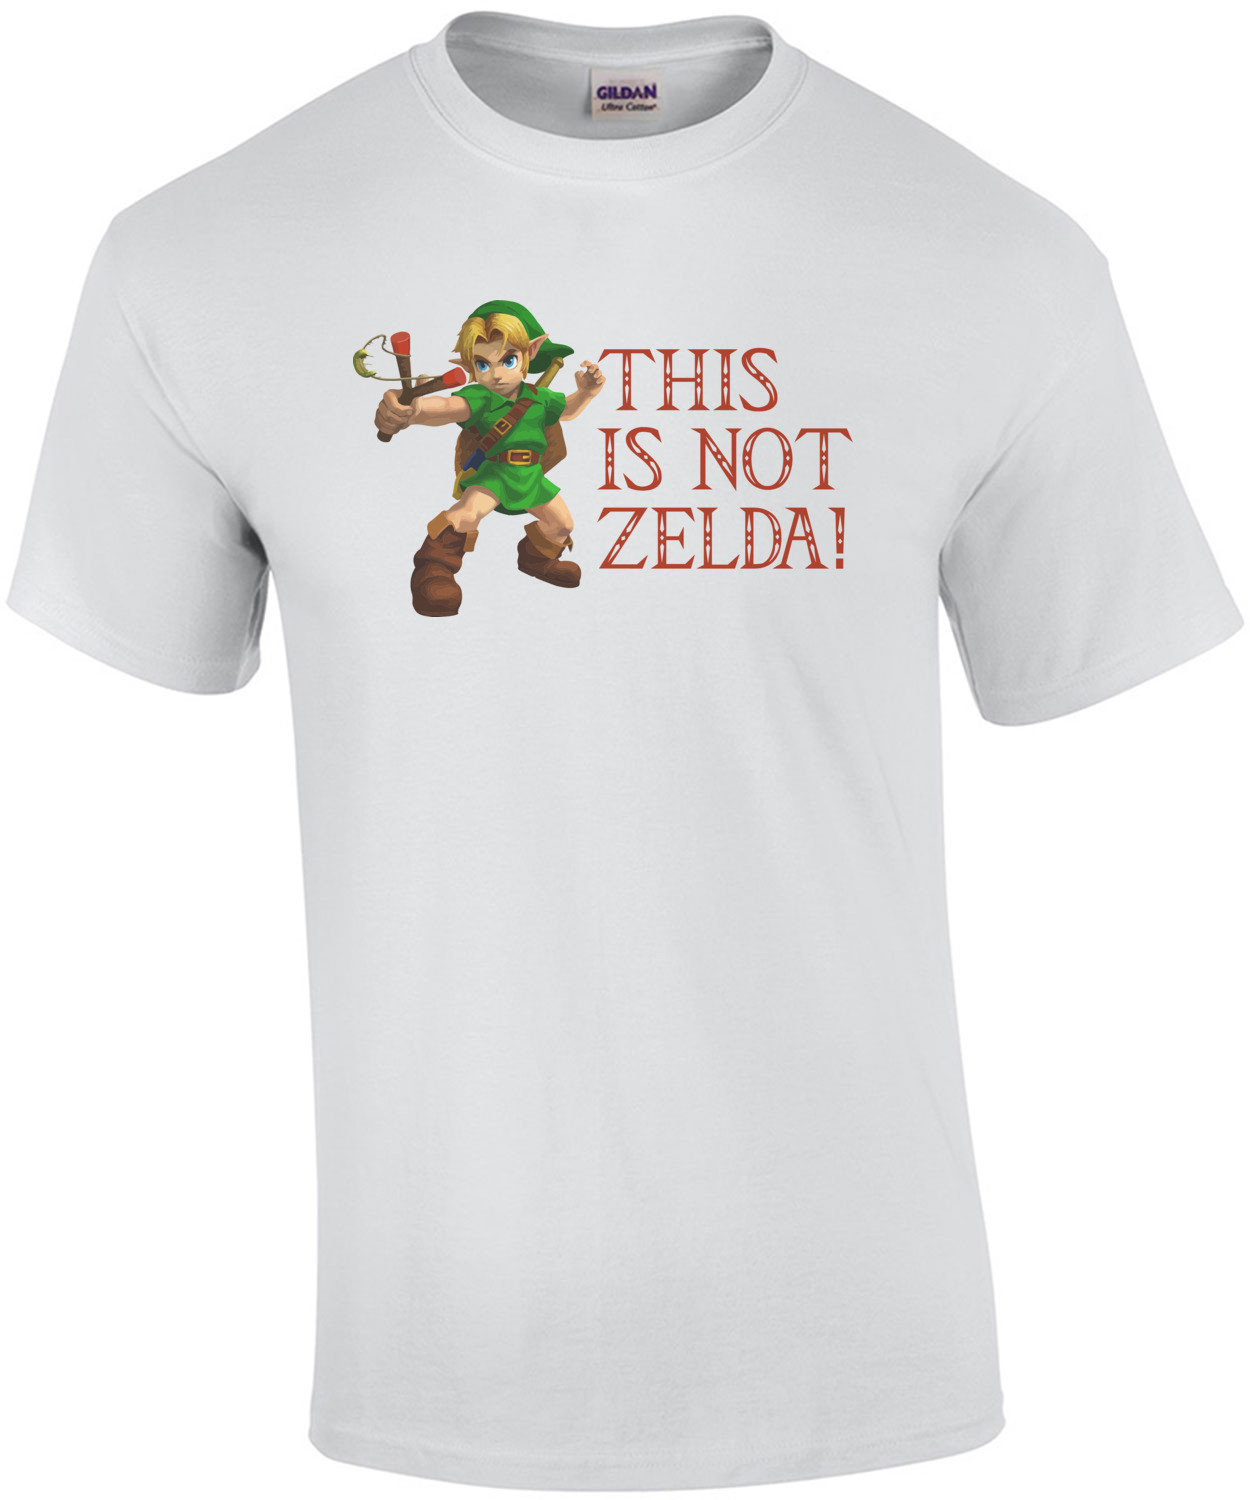 This Is Not Zelda